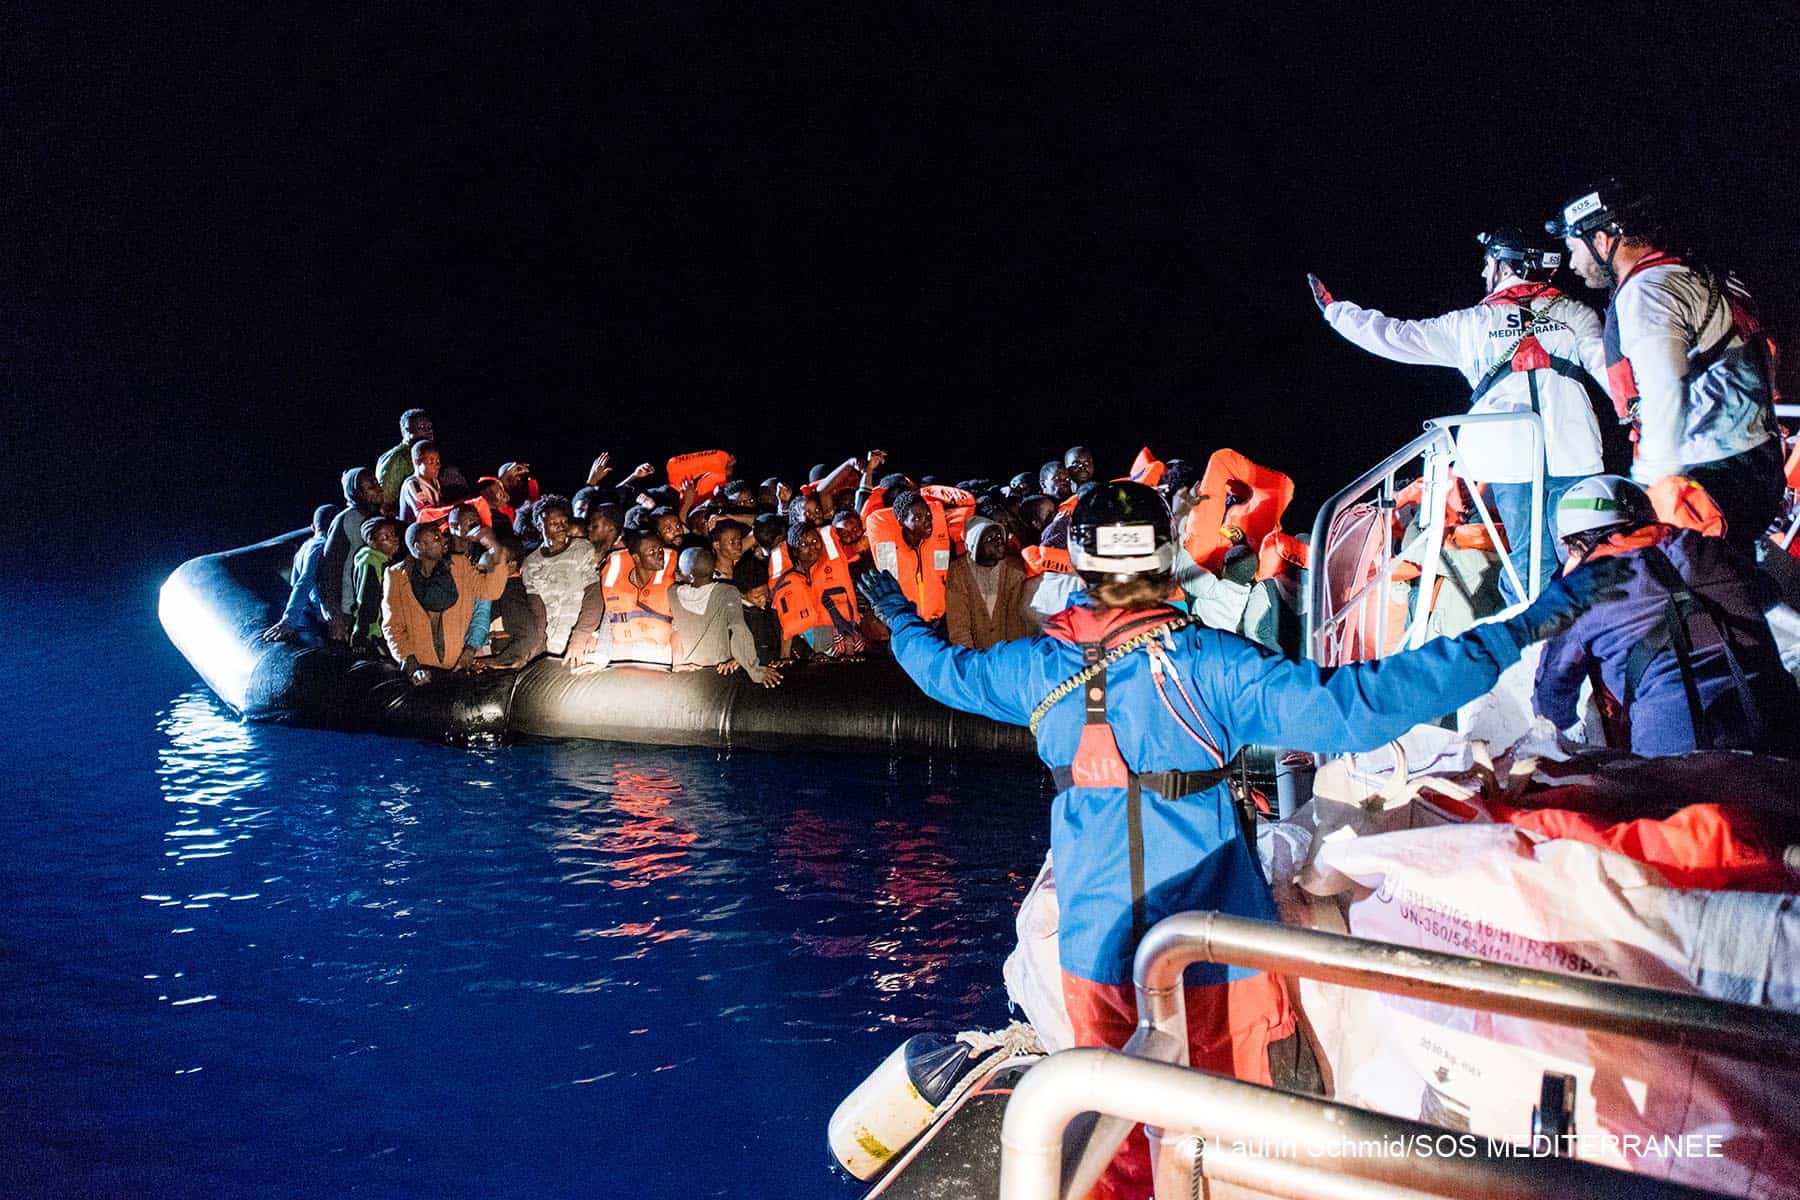 Se avete intenzione di riportarmi in Libia, salto giù dalla barca  – Diario di bordo – dal SAR team